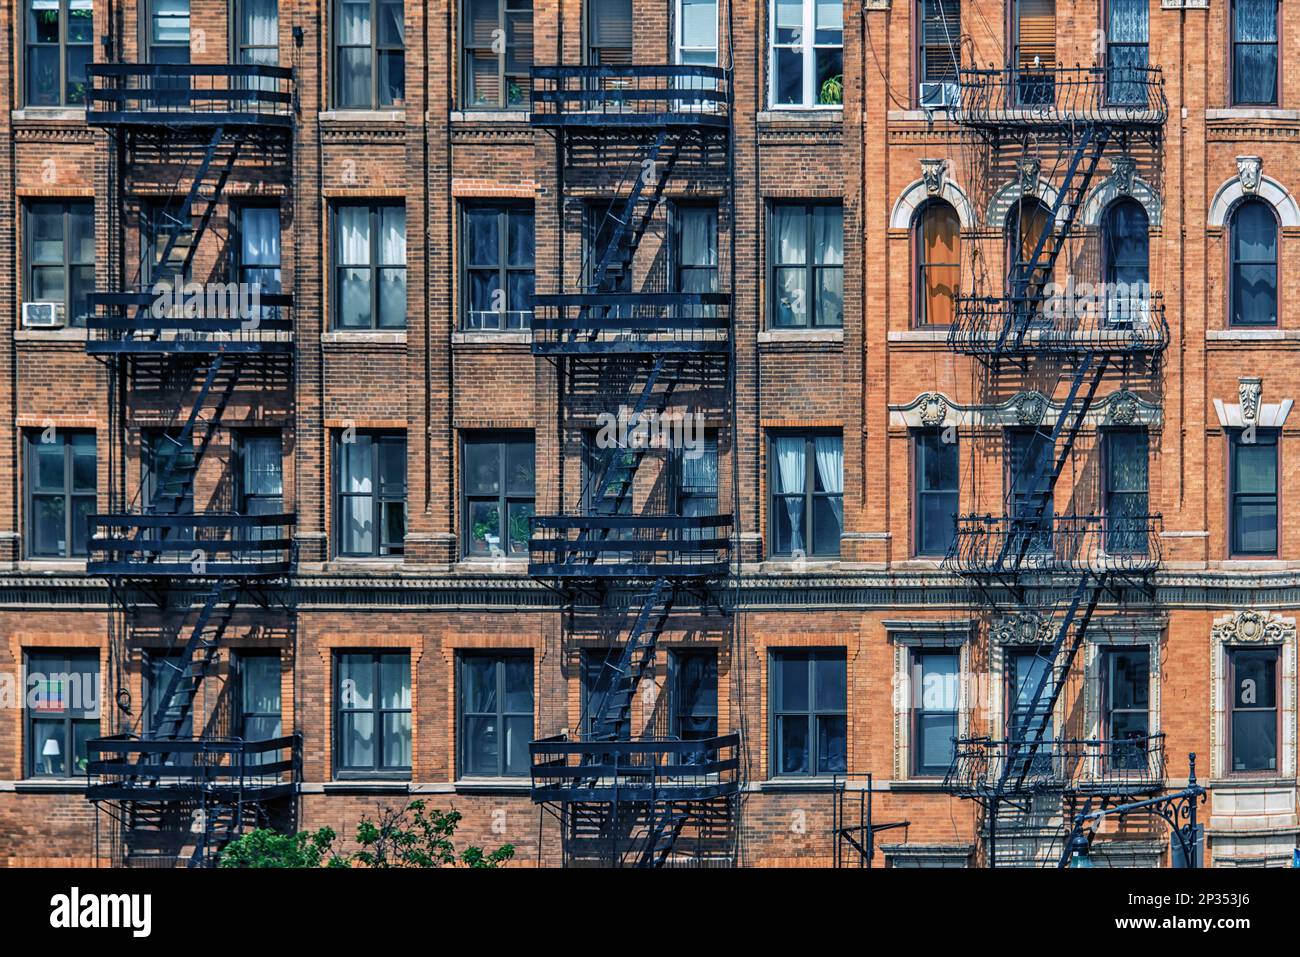 Facade building in New York Stock Photo